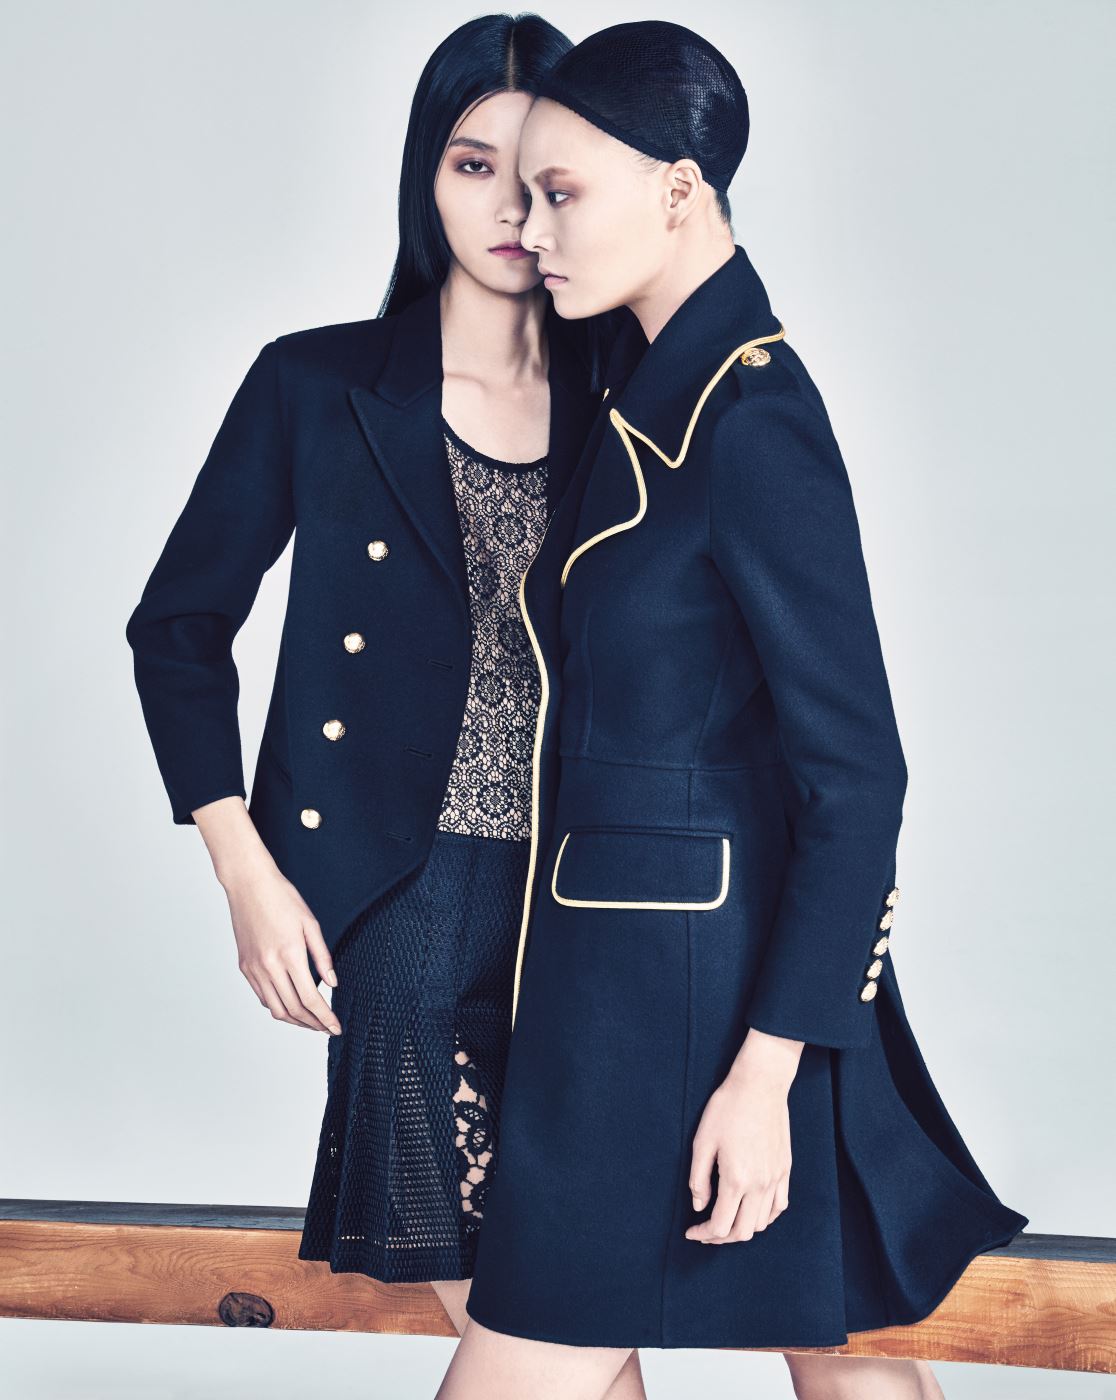 박지혜가 입은 캐시미어 밀리터리 재킷, 안에 입은 검은색 레이스 톱, 실크 레이스 킬트 스커트, 이수진이 입은 골드 라이닝 밀리터리 코트는 Burberry Prorsum 제품.